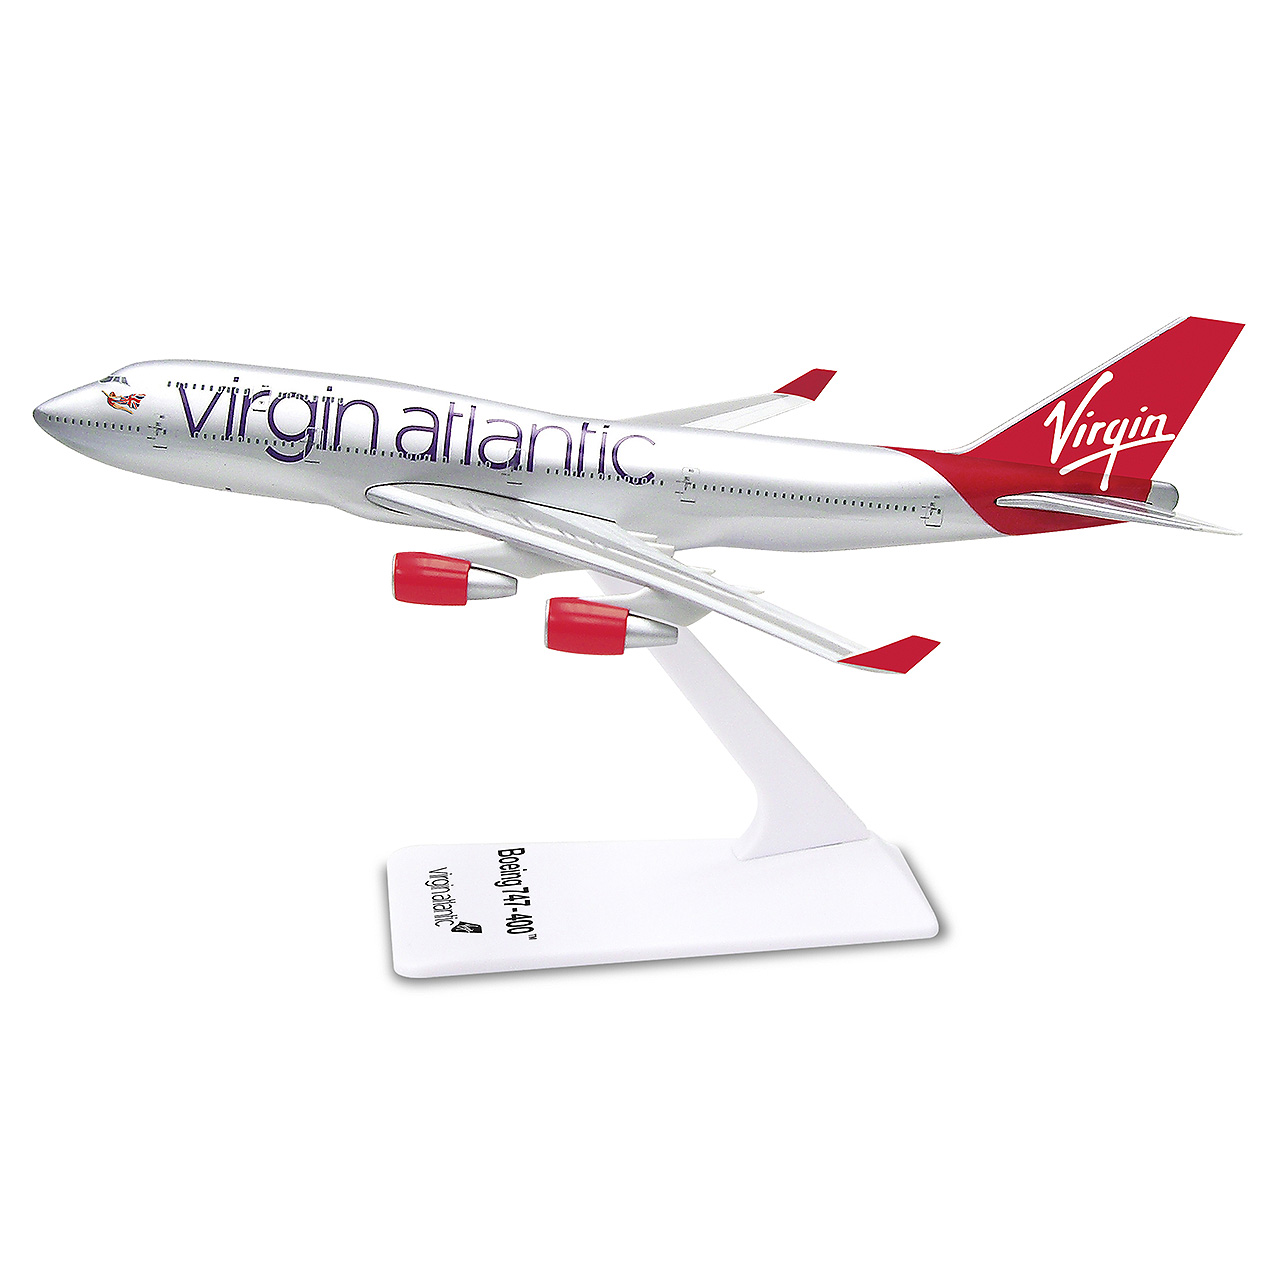 Virgin atlantic boeing 747-400 1:250 nuevo b747 avión modelo sm747-15wb Premier 